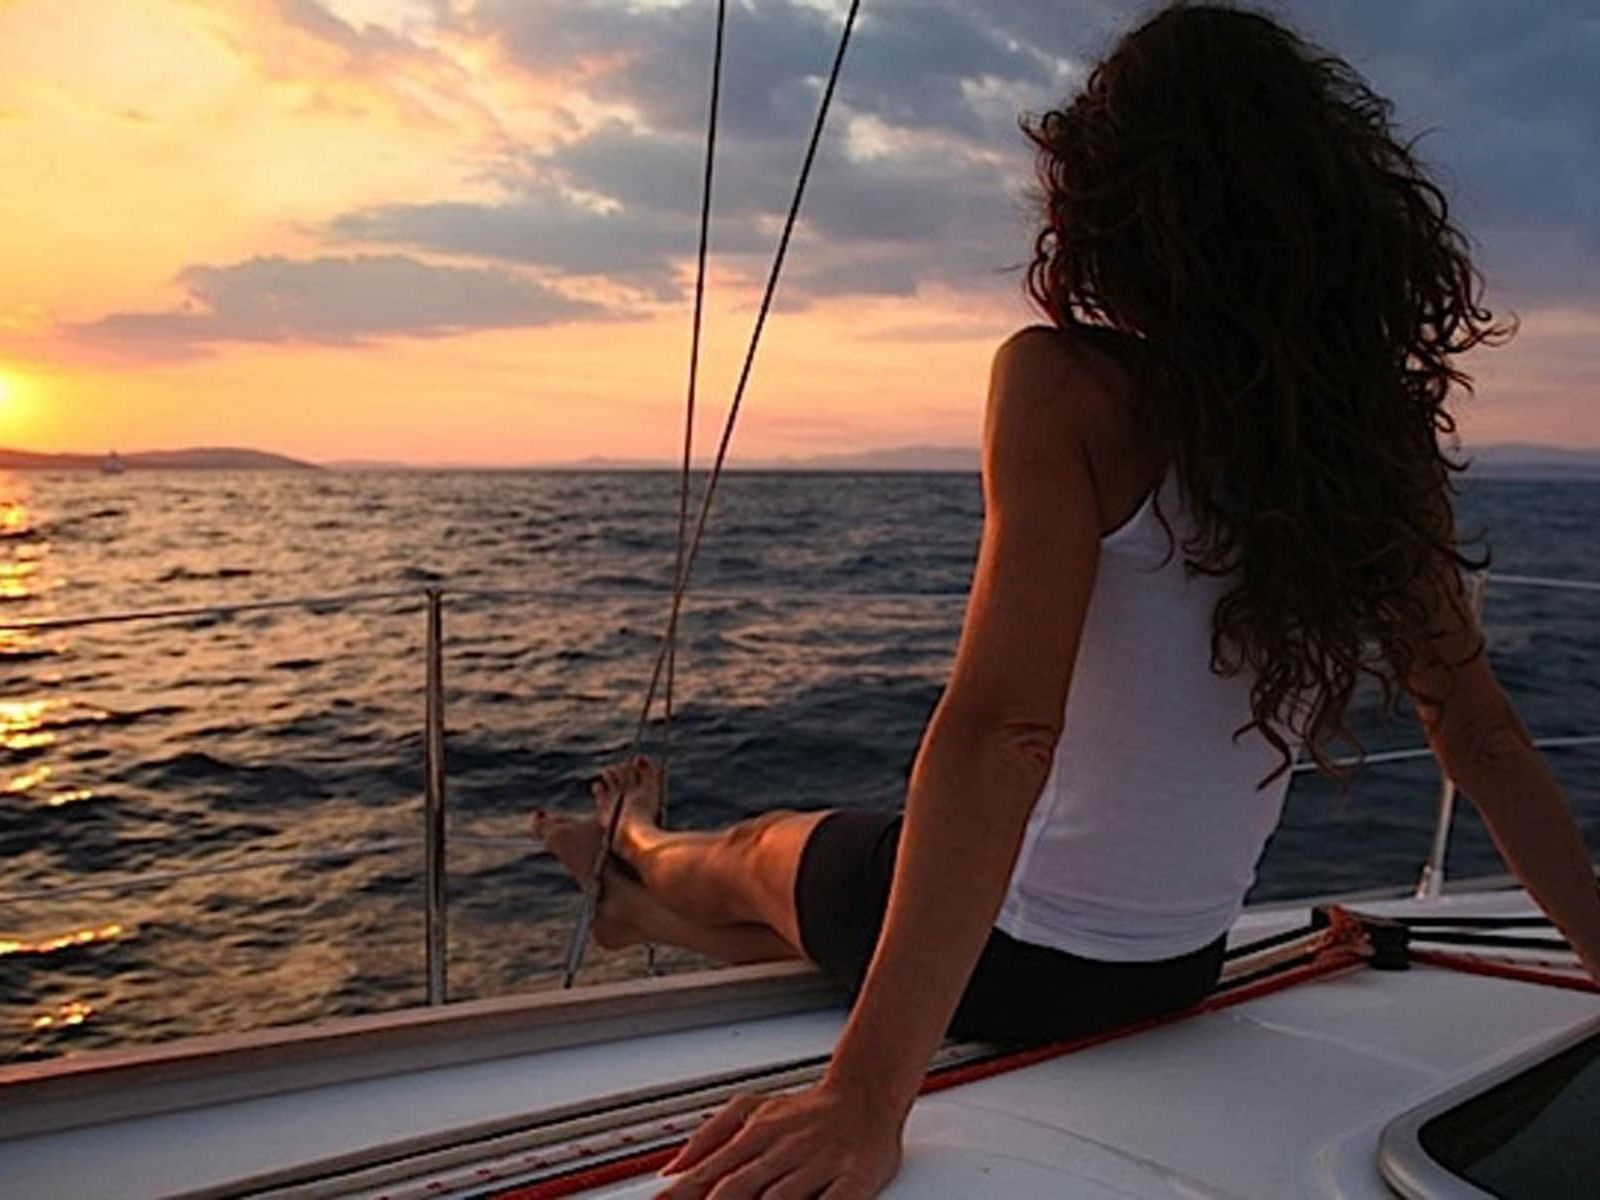 Uma menina a relaxar no convés de um barco no meio do mar